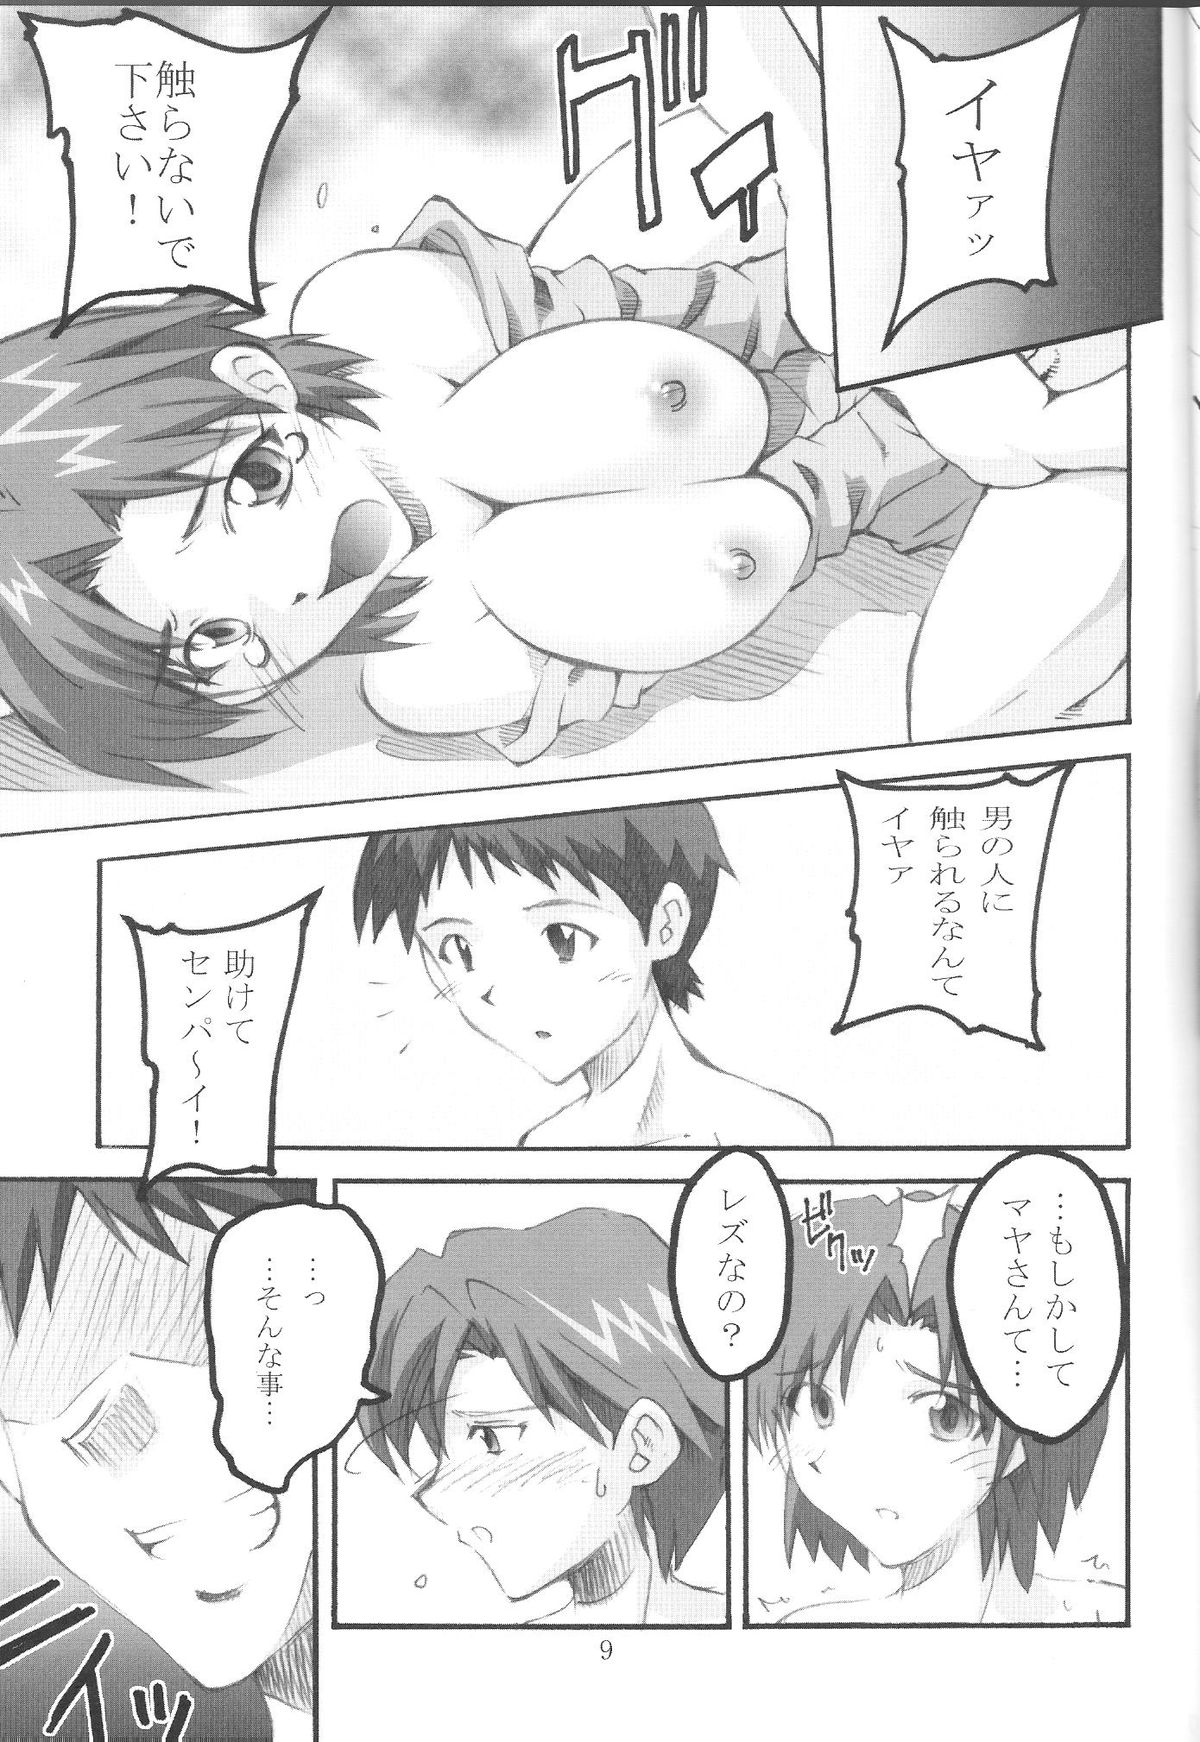 (SC42) [I&I (Naohiro)] SHINJI 05 - maya ibuki (Neon Genesis Evangelion) page 8 full